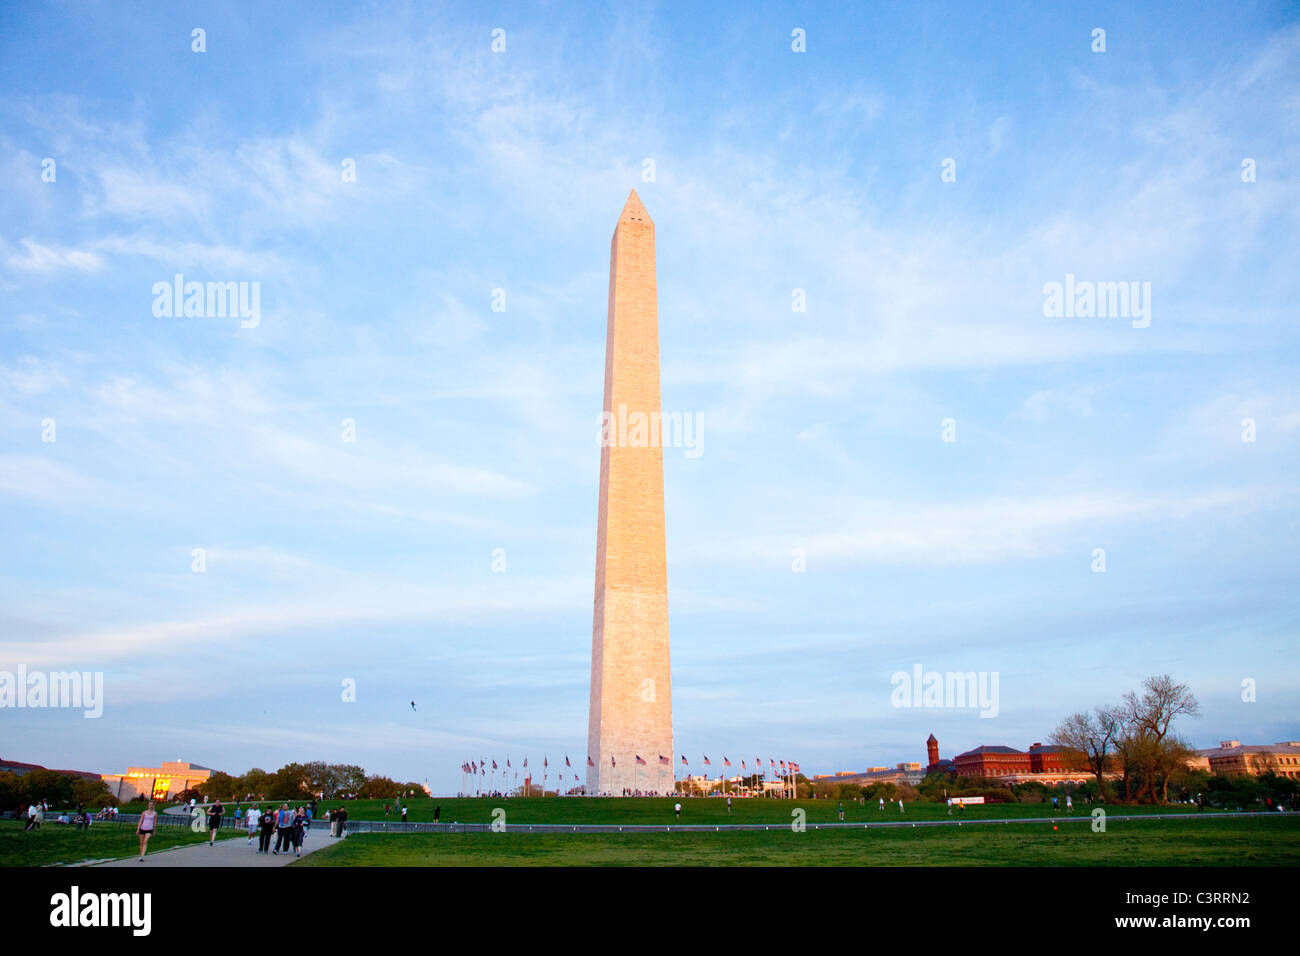 Le Monument de Washington, Washington DC Banque D'Images